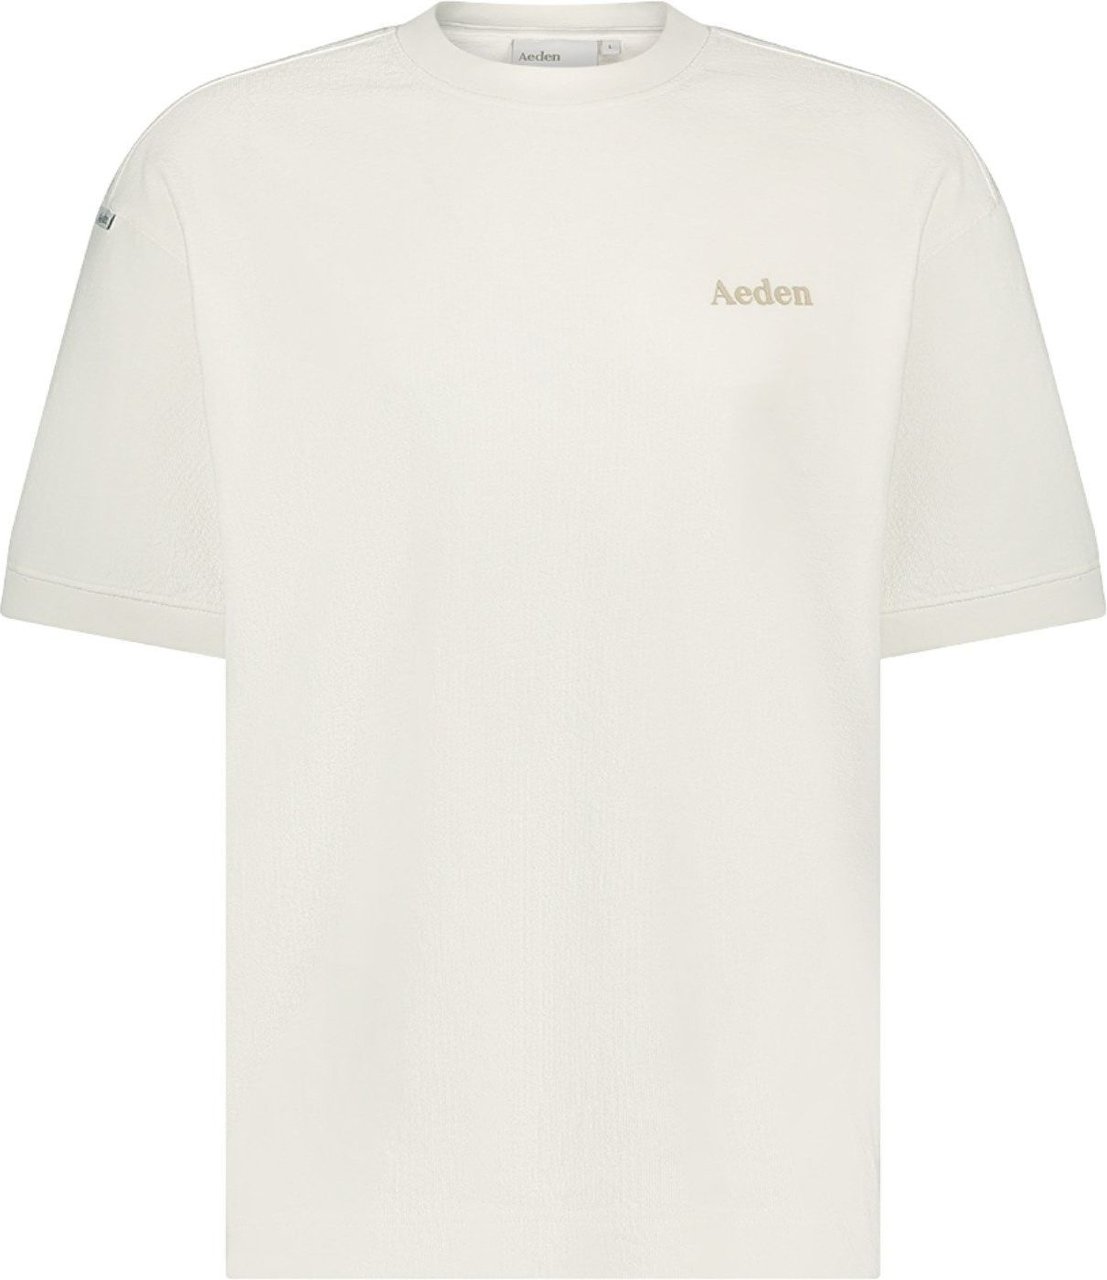 Aeden Aeden Heren T-shirt Wit A22242819/101 Jordan Wit